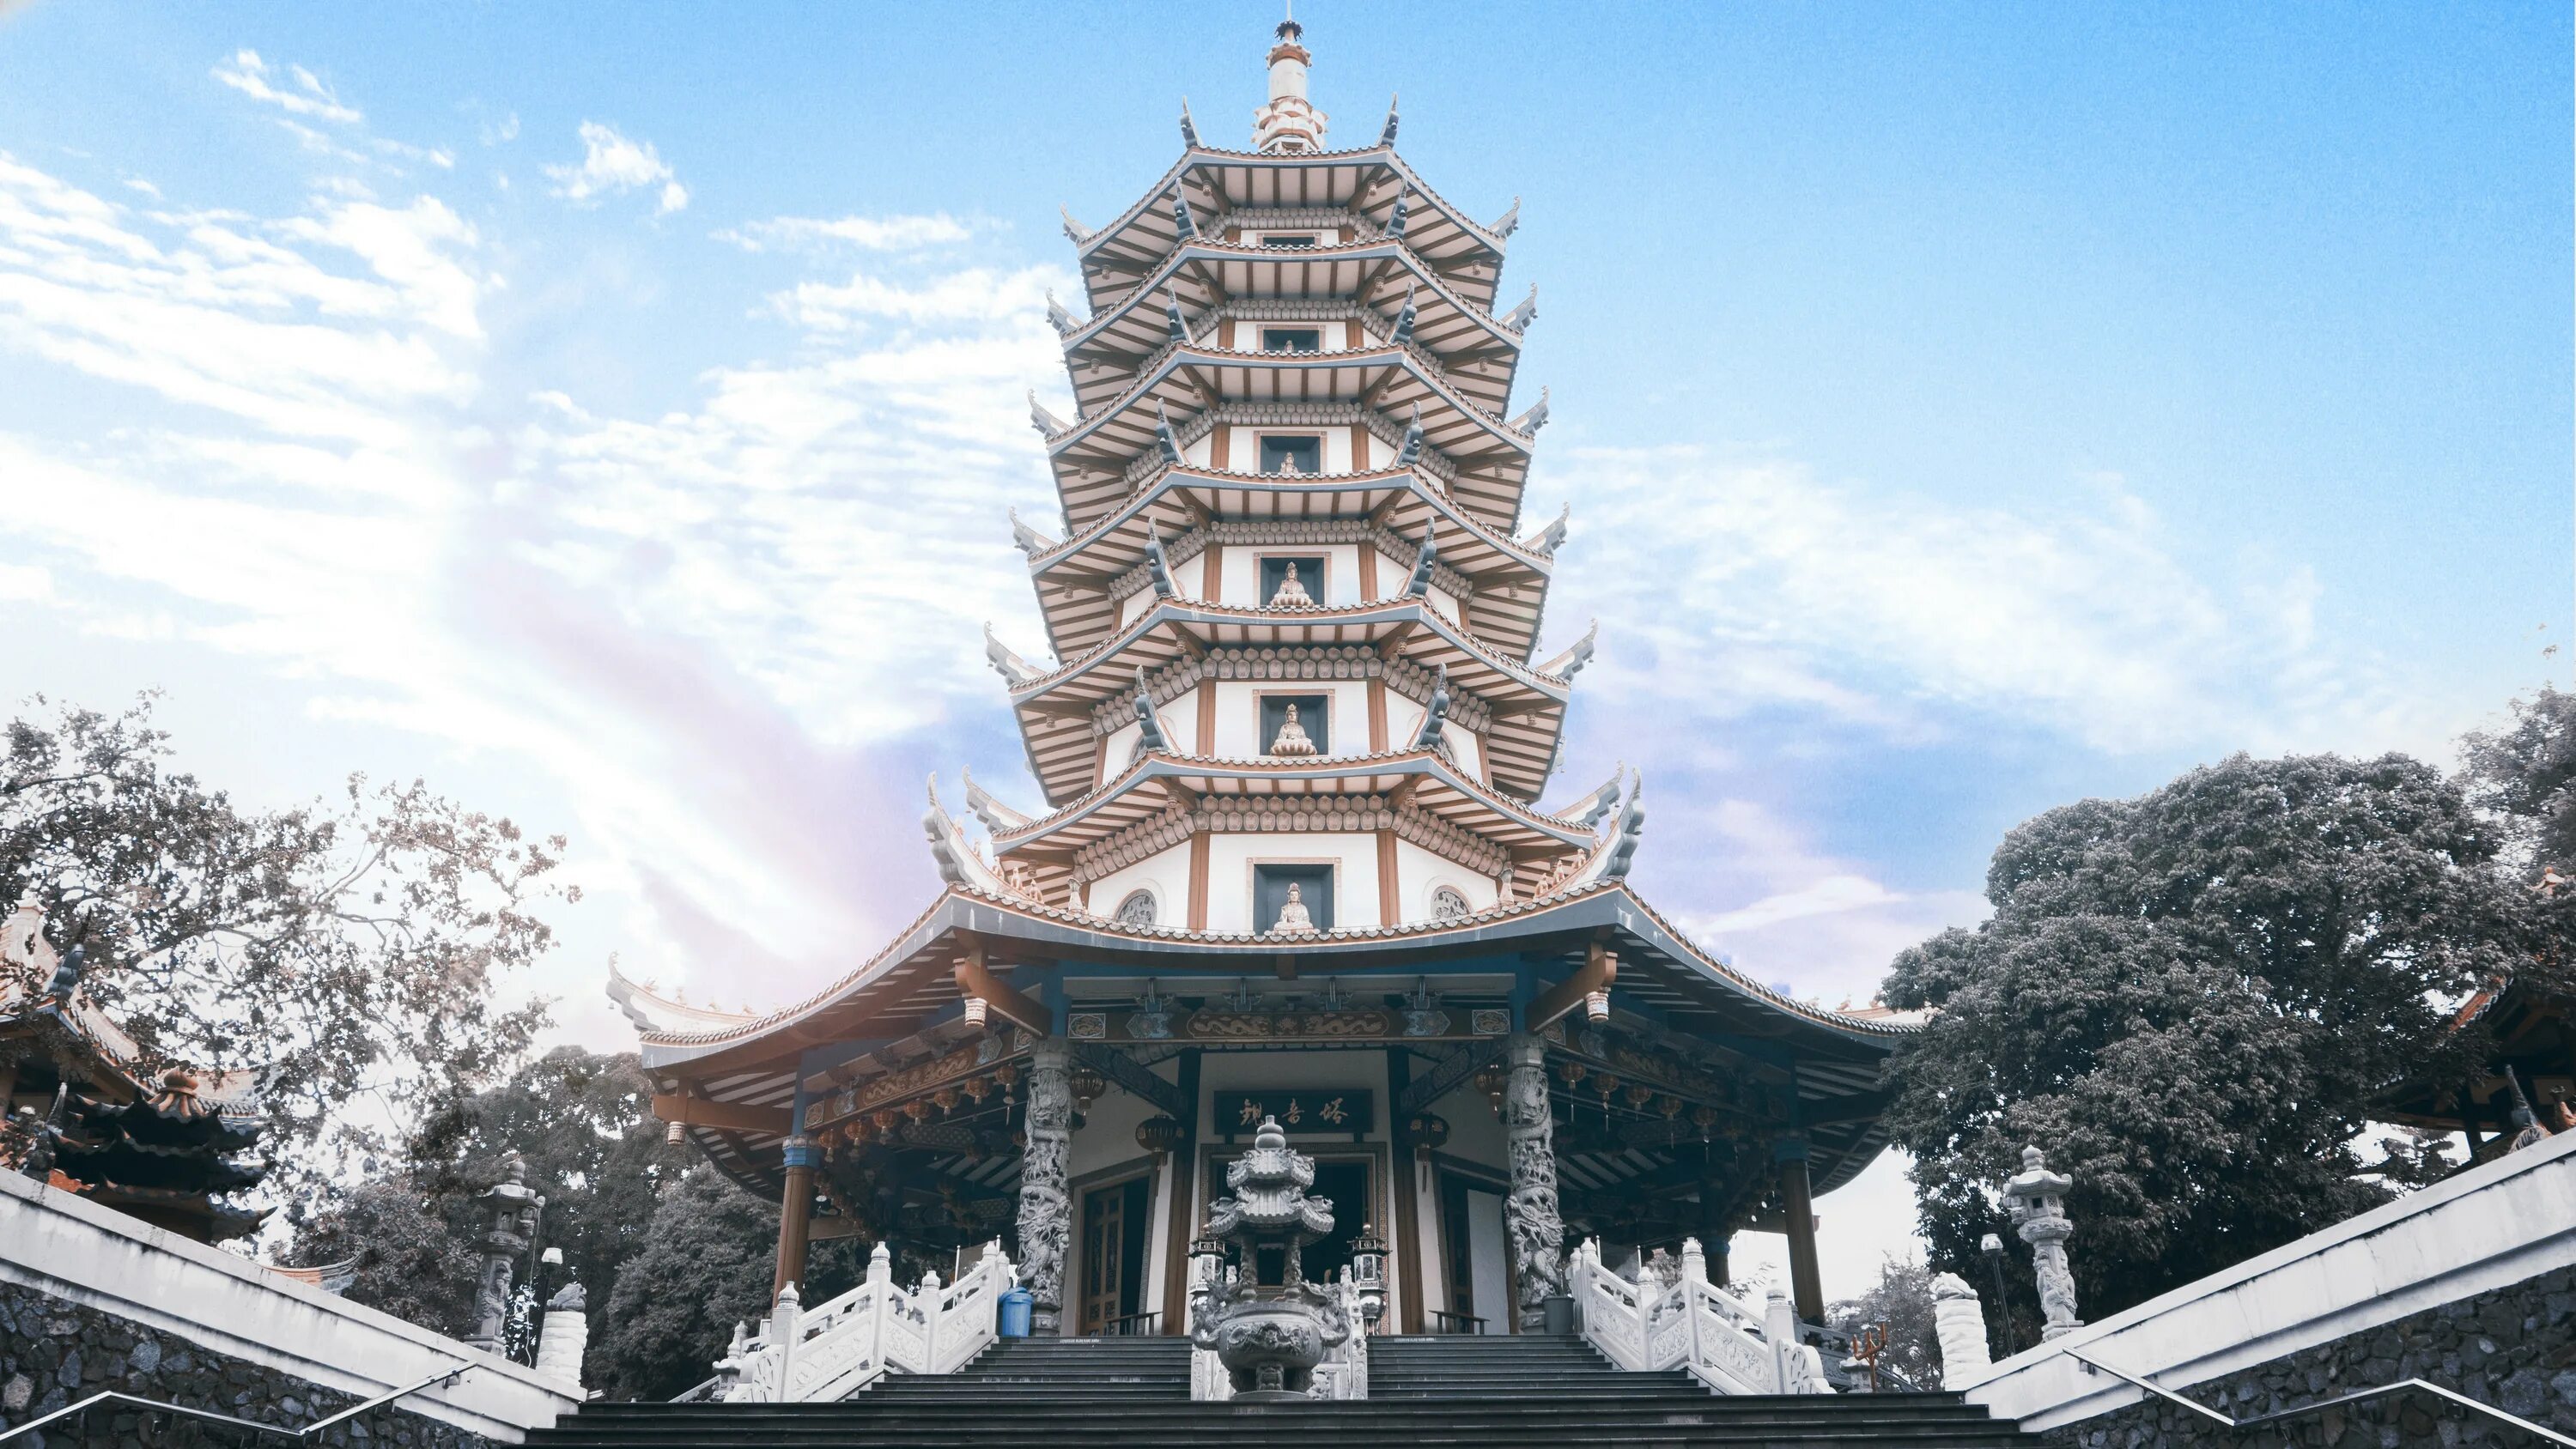 Буддийская архитектура пагода. Архитектура Японии, храм пагода. Буддистская архитектура Китая. Буддийский храм-пагода в Японии. Asia build